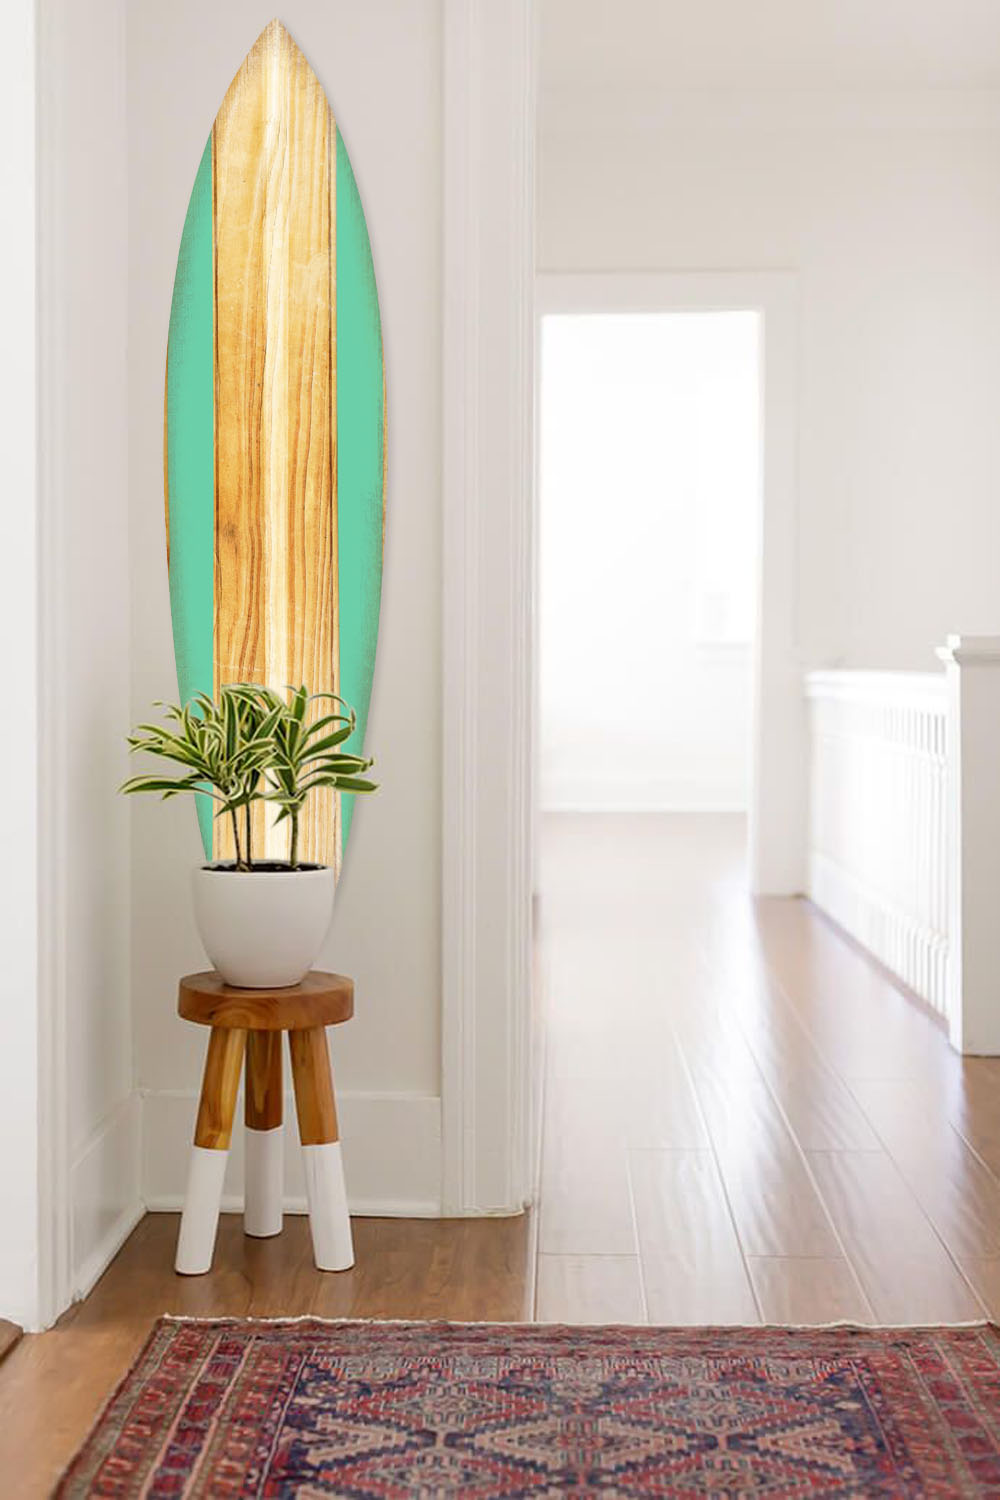 HomeRoots Home Decor 18" x 1" x 76" Wood, Green, Malibu Surfboard Wall Art features